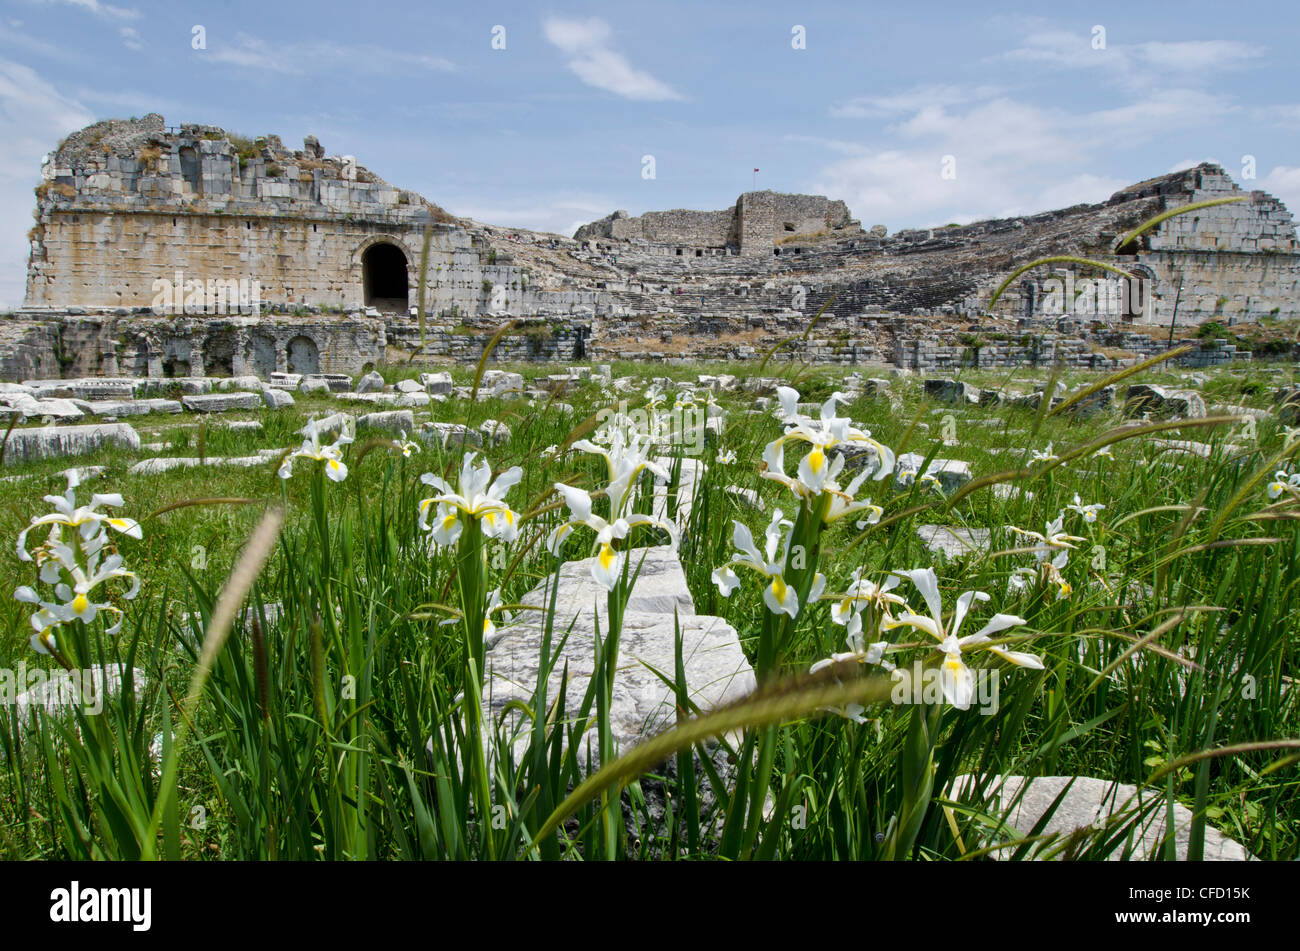 Anfiteatro di Mileto, antica città greca sulla costa occidentale dell'Anatolia, Turchia. Foto Stock